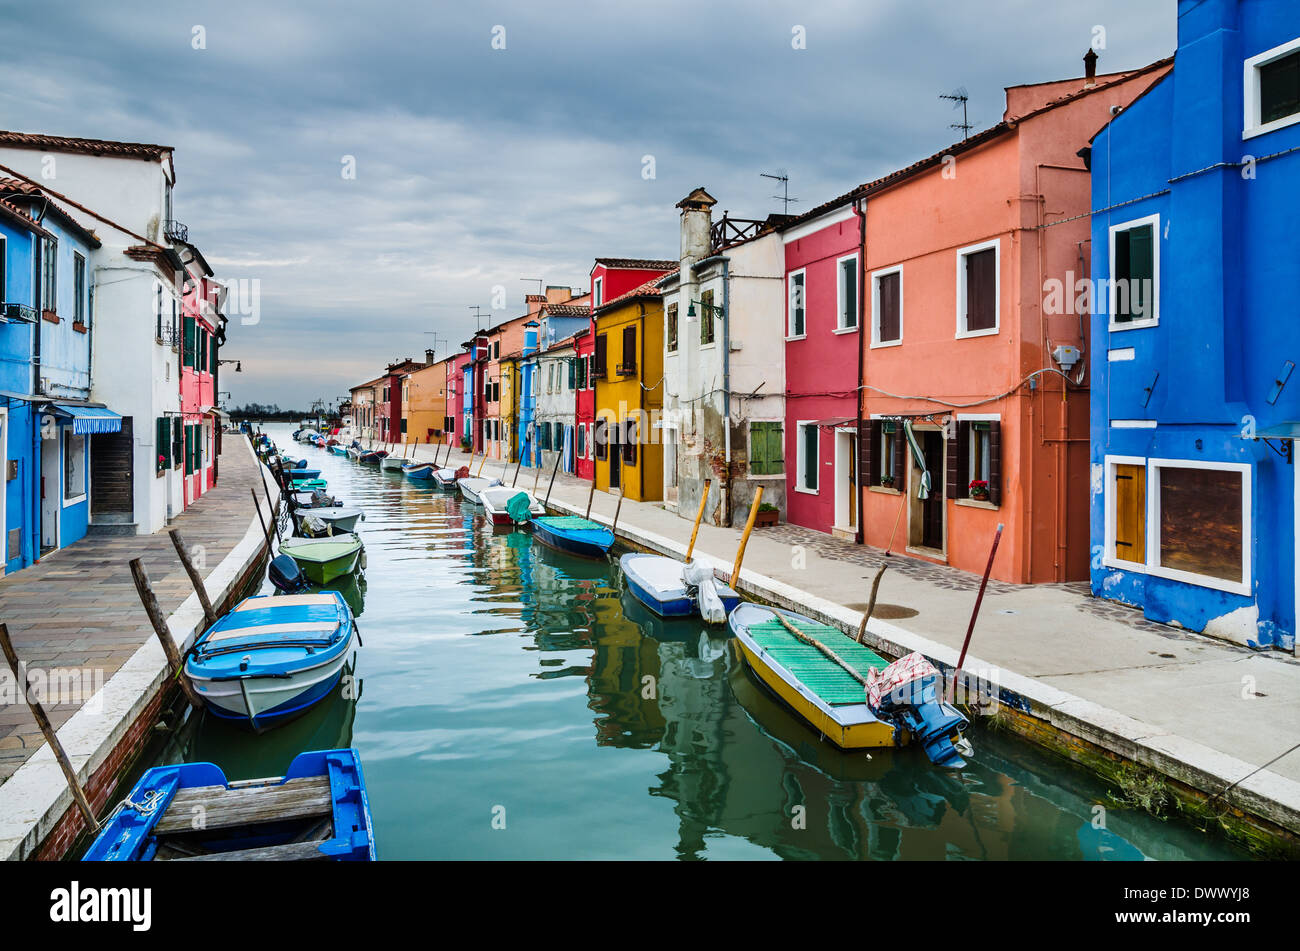 Burano, Venecia, Italia, Canal vista de Burano aldea colorida, hito de la región de Veneto. Foto de stock